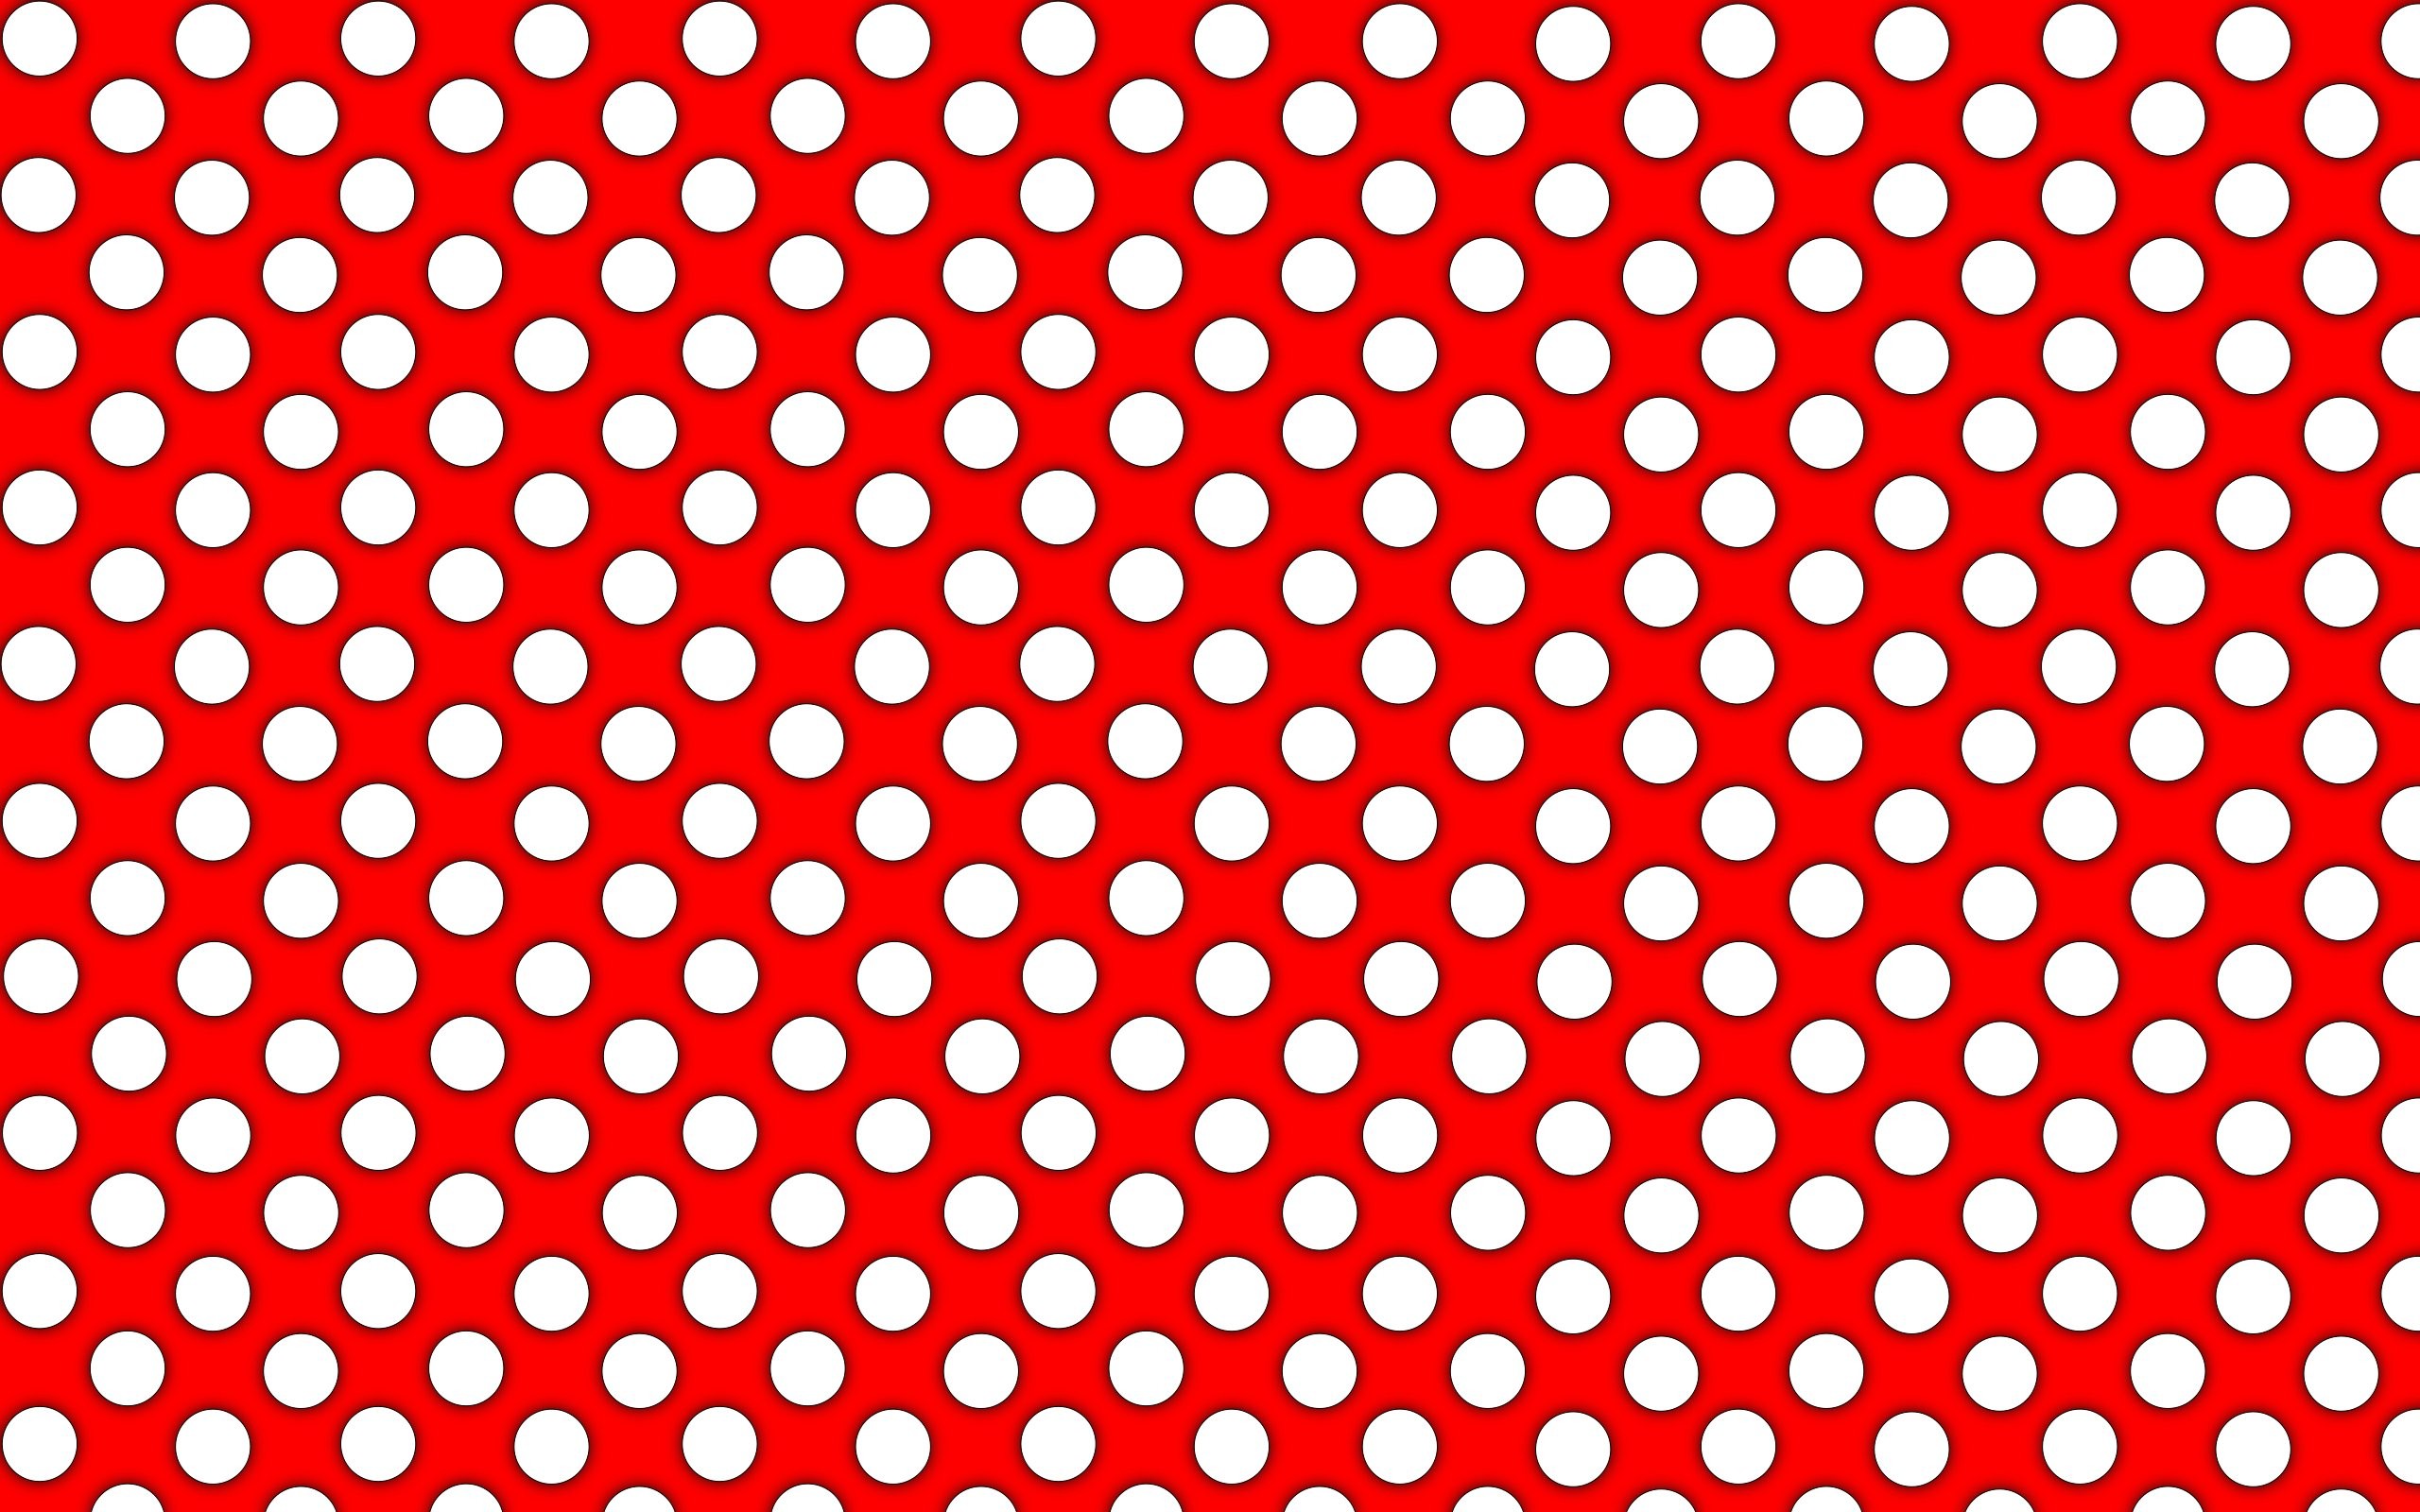 HD Polka Dot Wallpaper (54+ images)